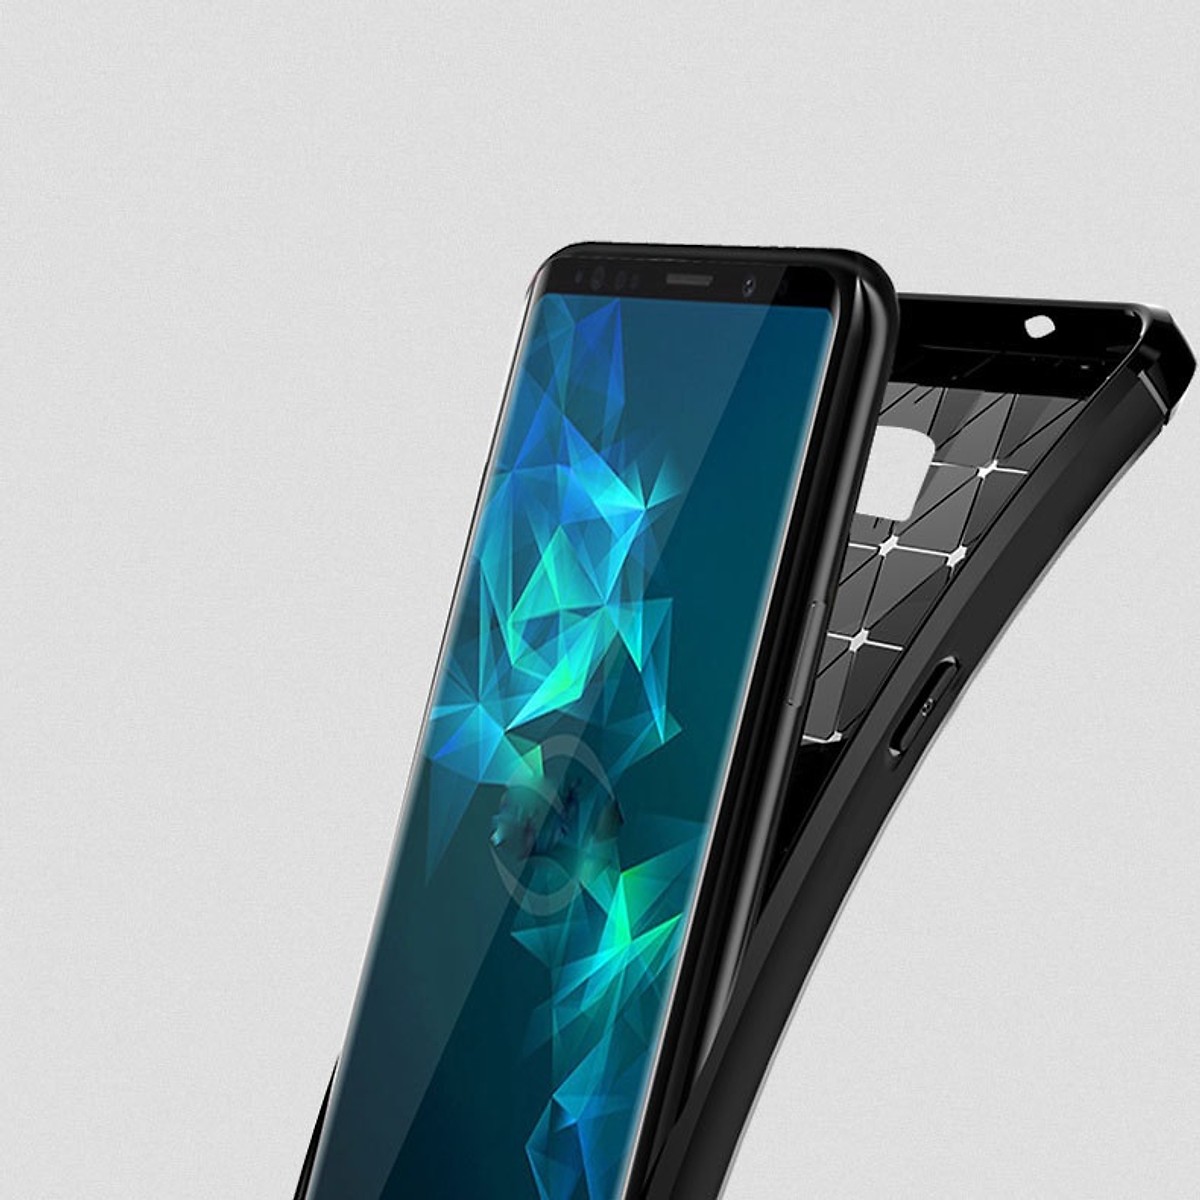 Ốp lưng chống sốc vân kim loại cho Samsung Galaxy Note 9 hiệu Likgus